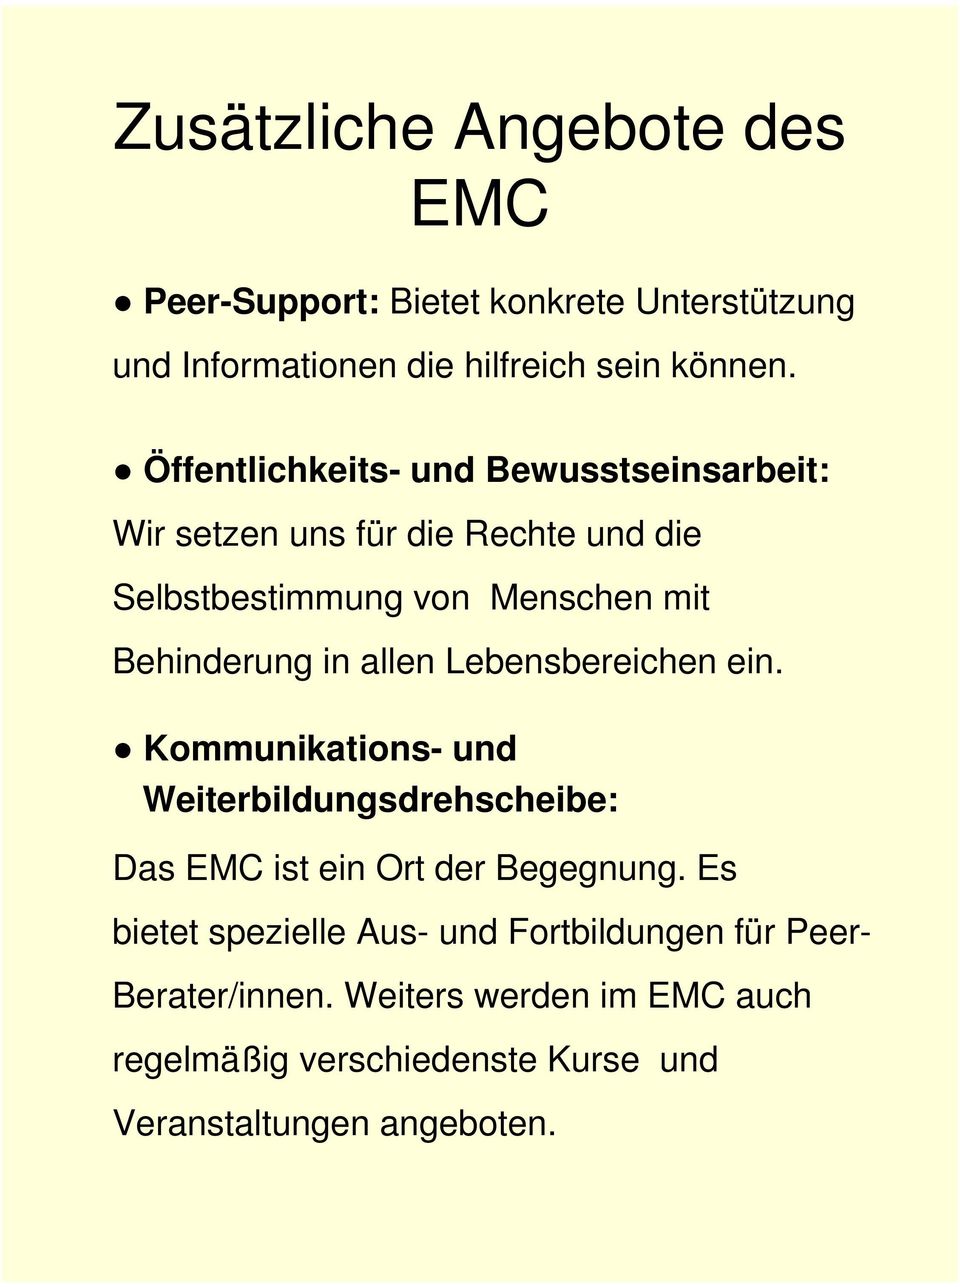 allen Lebensbereichen ein. Kommunikations- und Weiterbildungsdrehscheibe: Das EMC ist ein Ort der Begegnung.